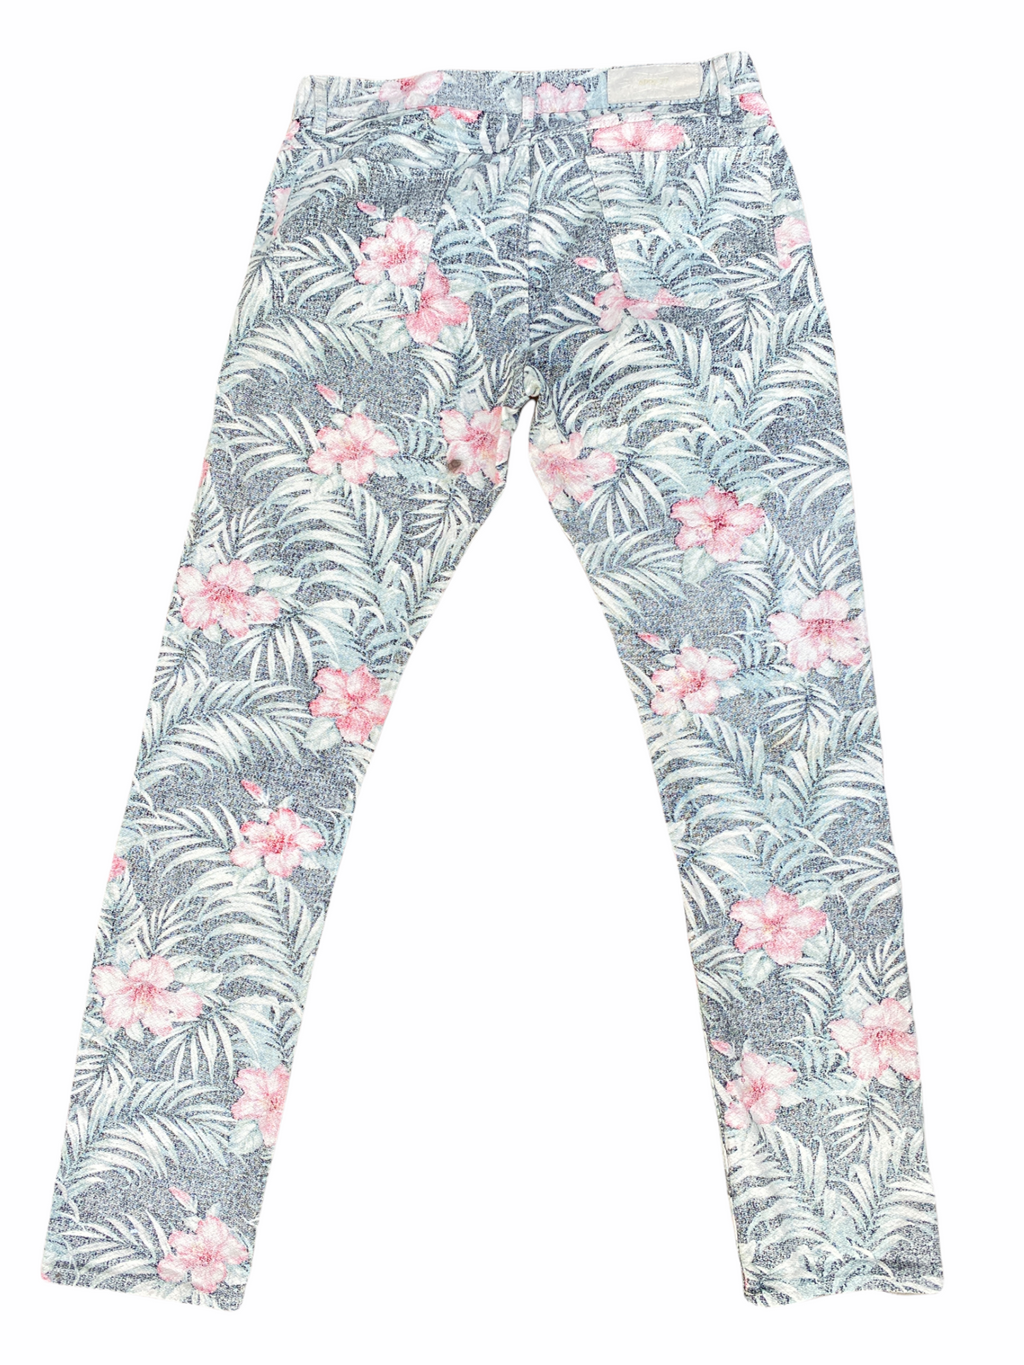 Slim Fit  Tallulah Hawaiian Print  Rock jeans